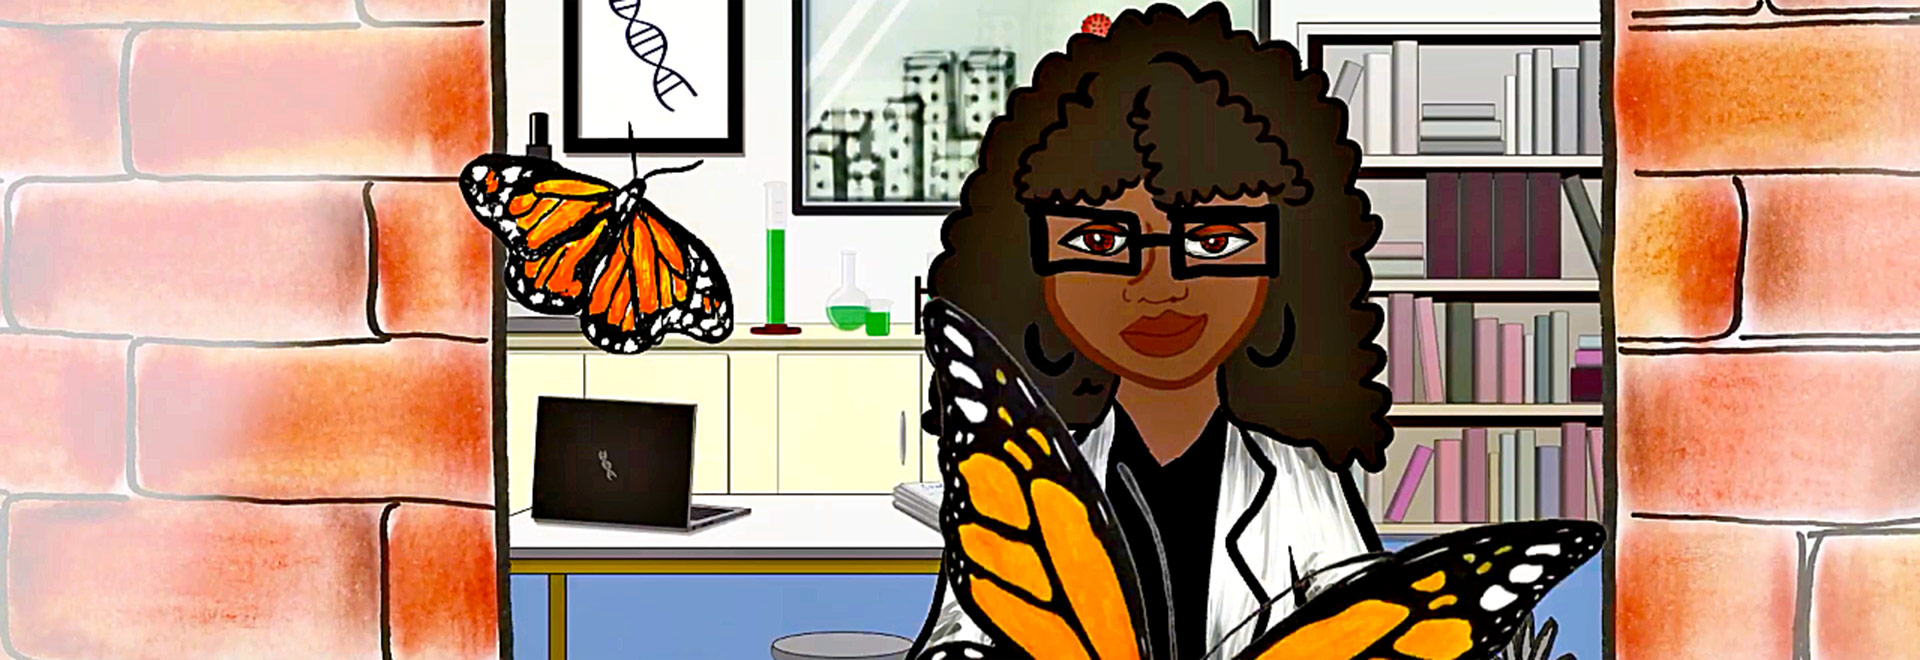 ilustração mostra um dos desenhos utilizados na animação. ele mostra uma cientista negra, com cabelos cacheados e óculos, em um laboratório